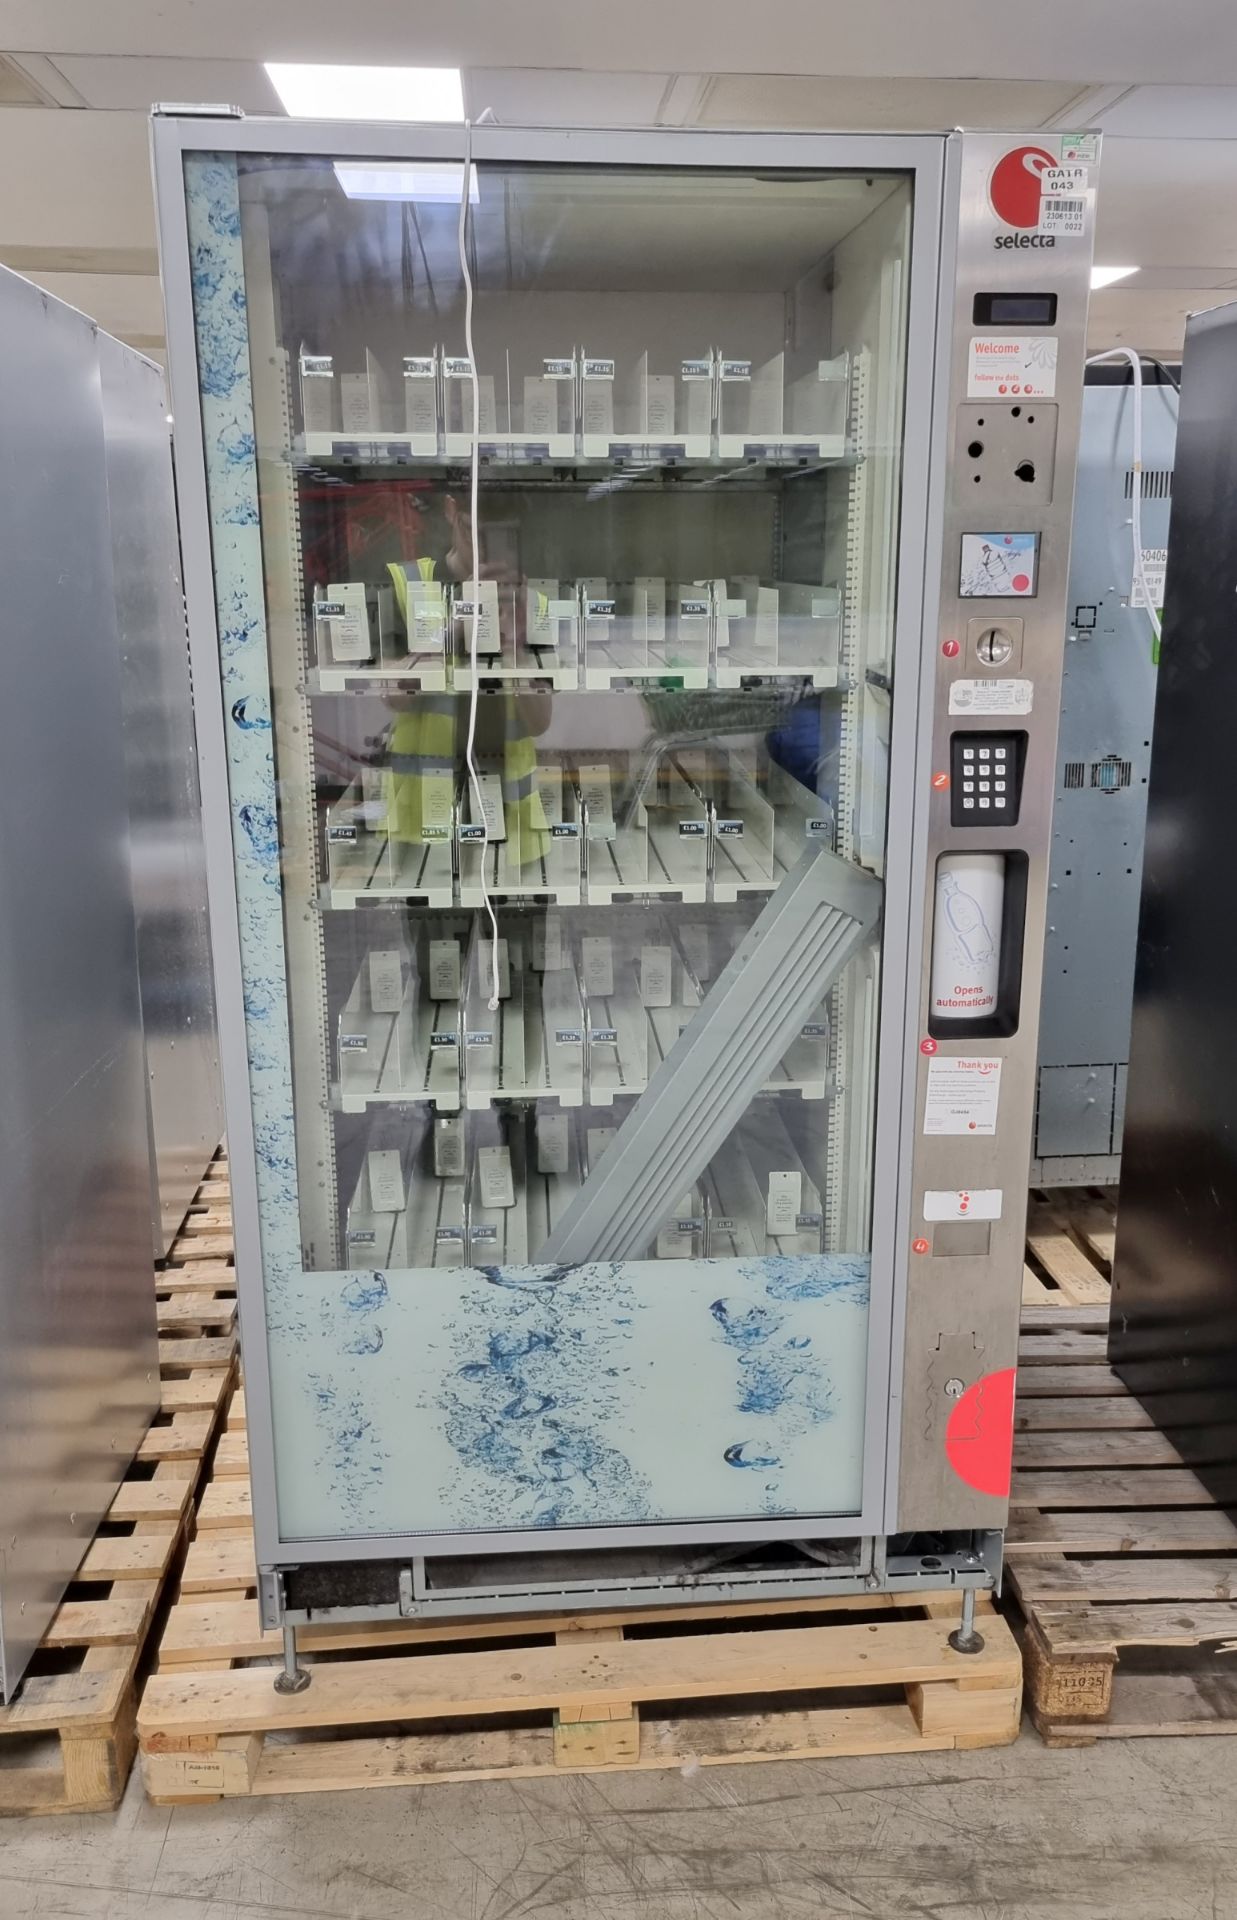 Selecta ST Tropez beverage vending machine - W 1000 x D 880 x H 1930mm - DAMAGE TO FRONT